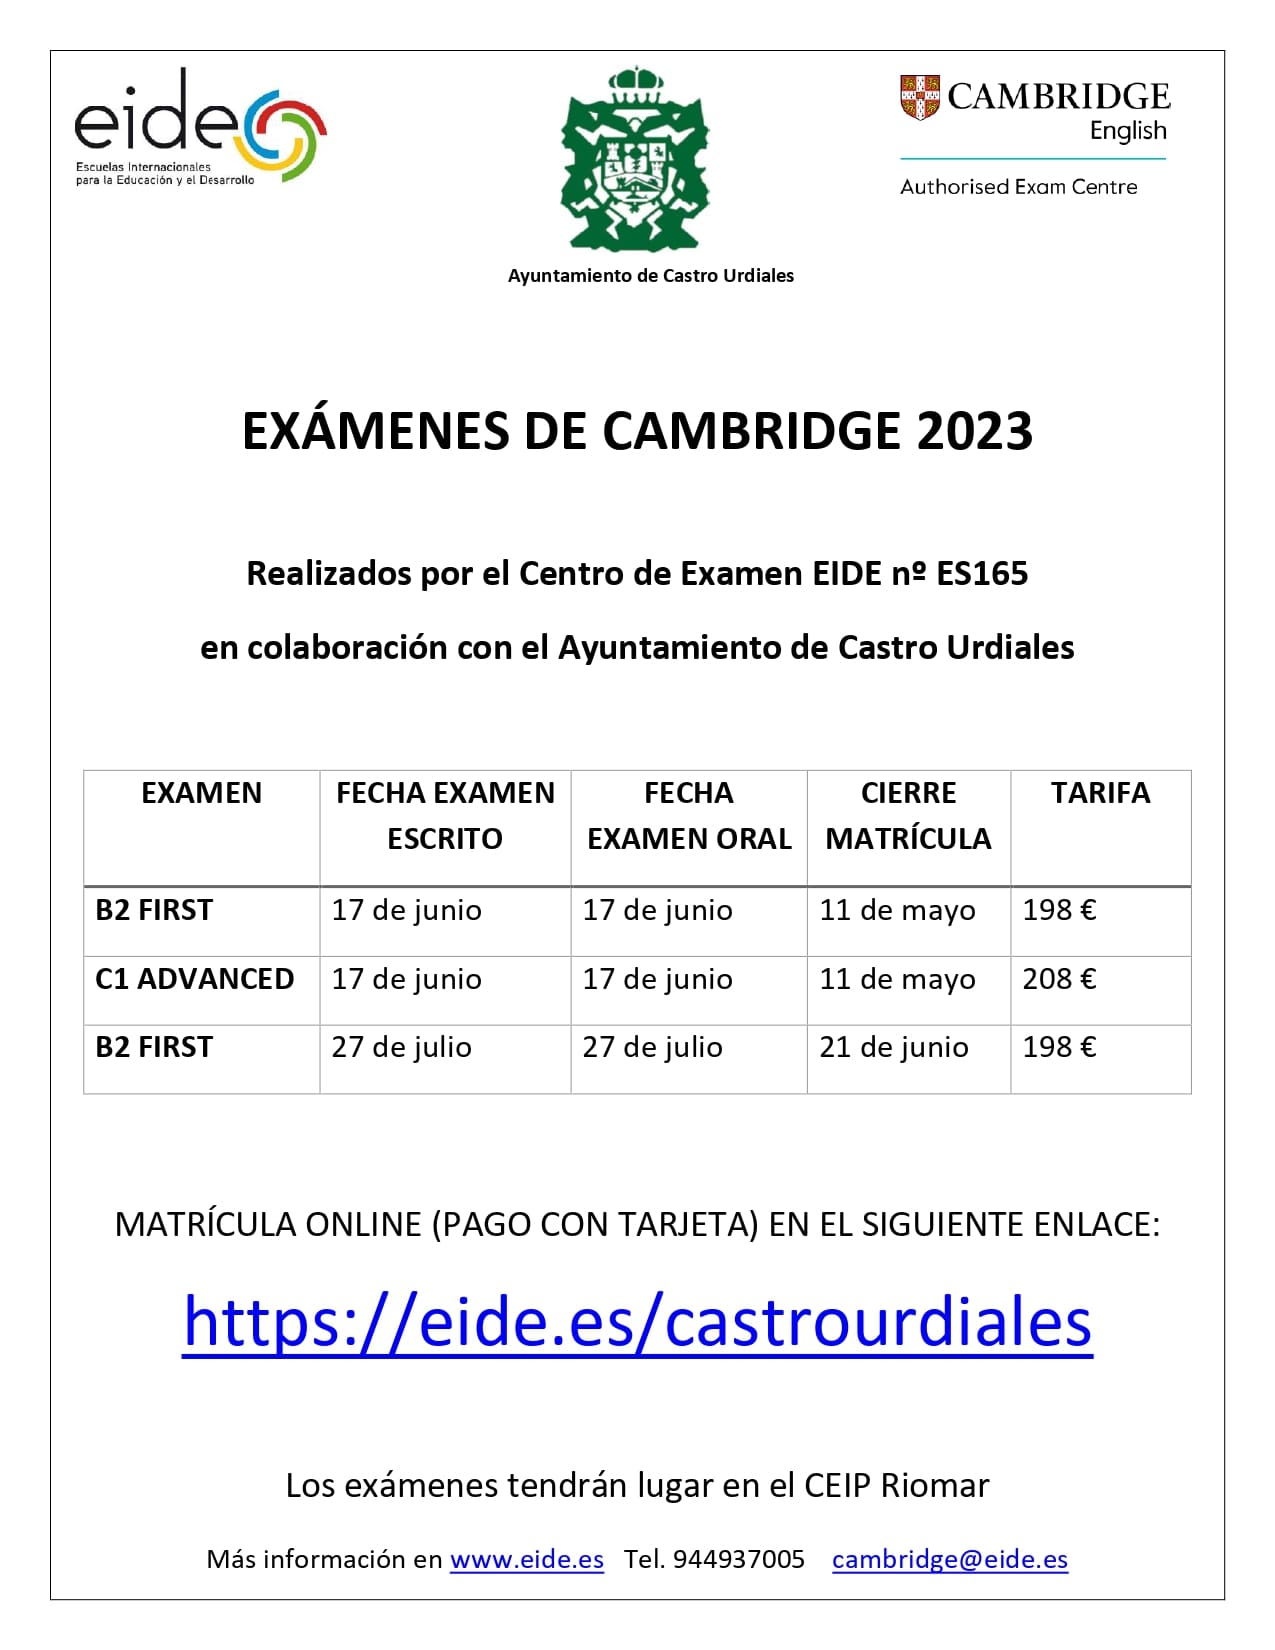 Fechas exámenes Cambridge 2023